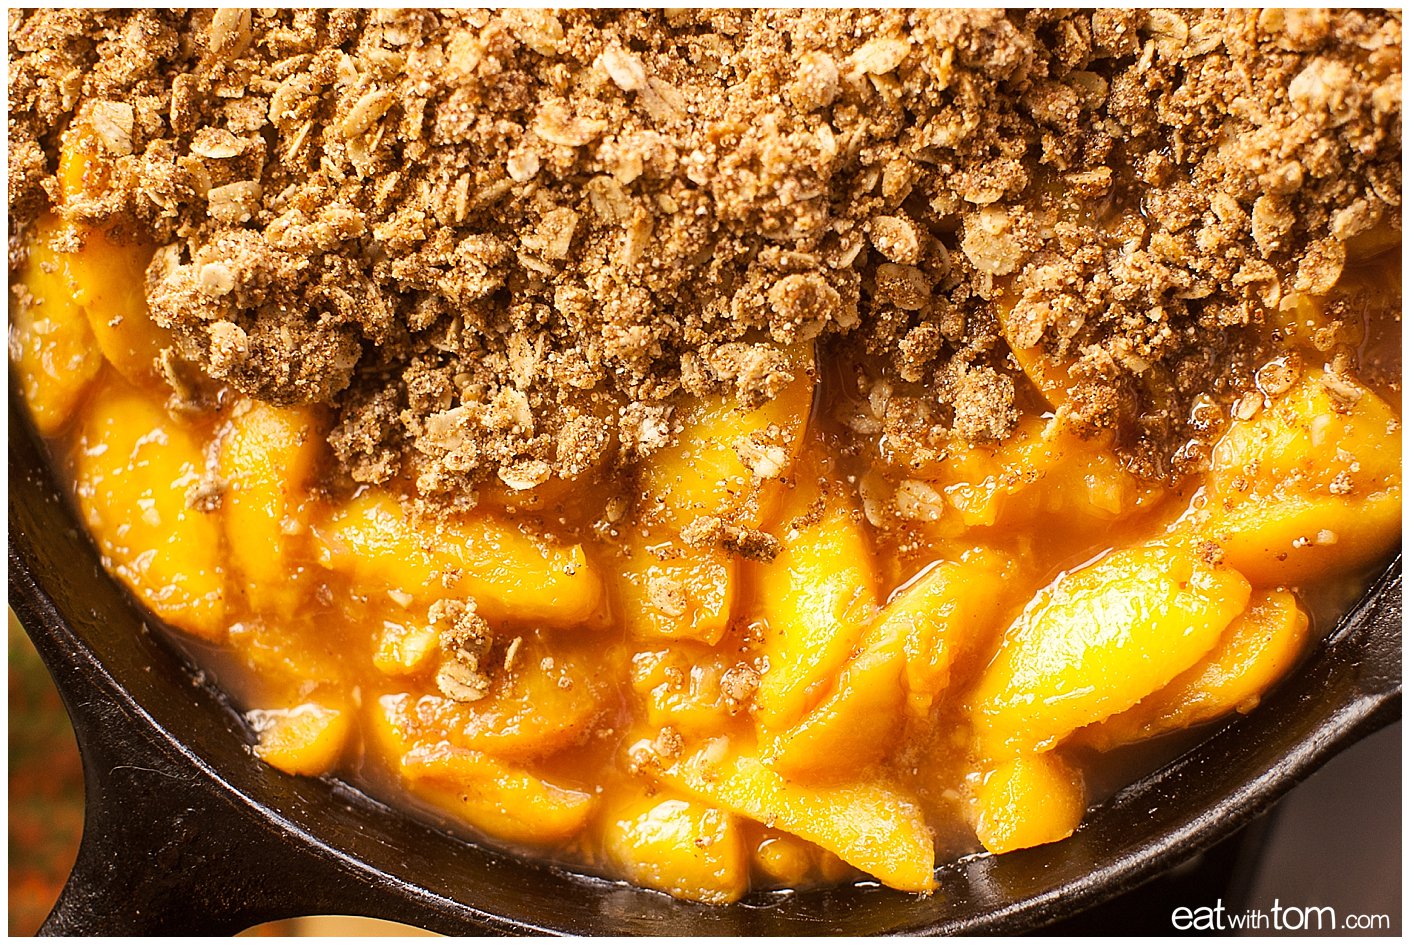 Peach quinoa crumble dessert recipe - Healthy Dessert Recipes Quinoa Peach Crumble